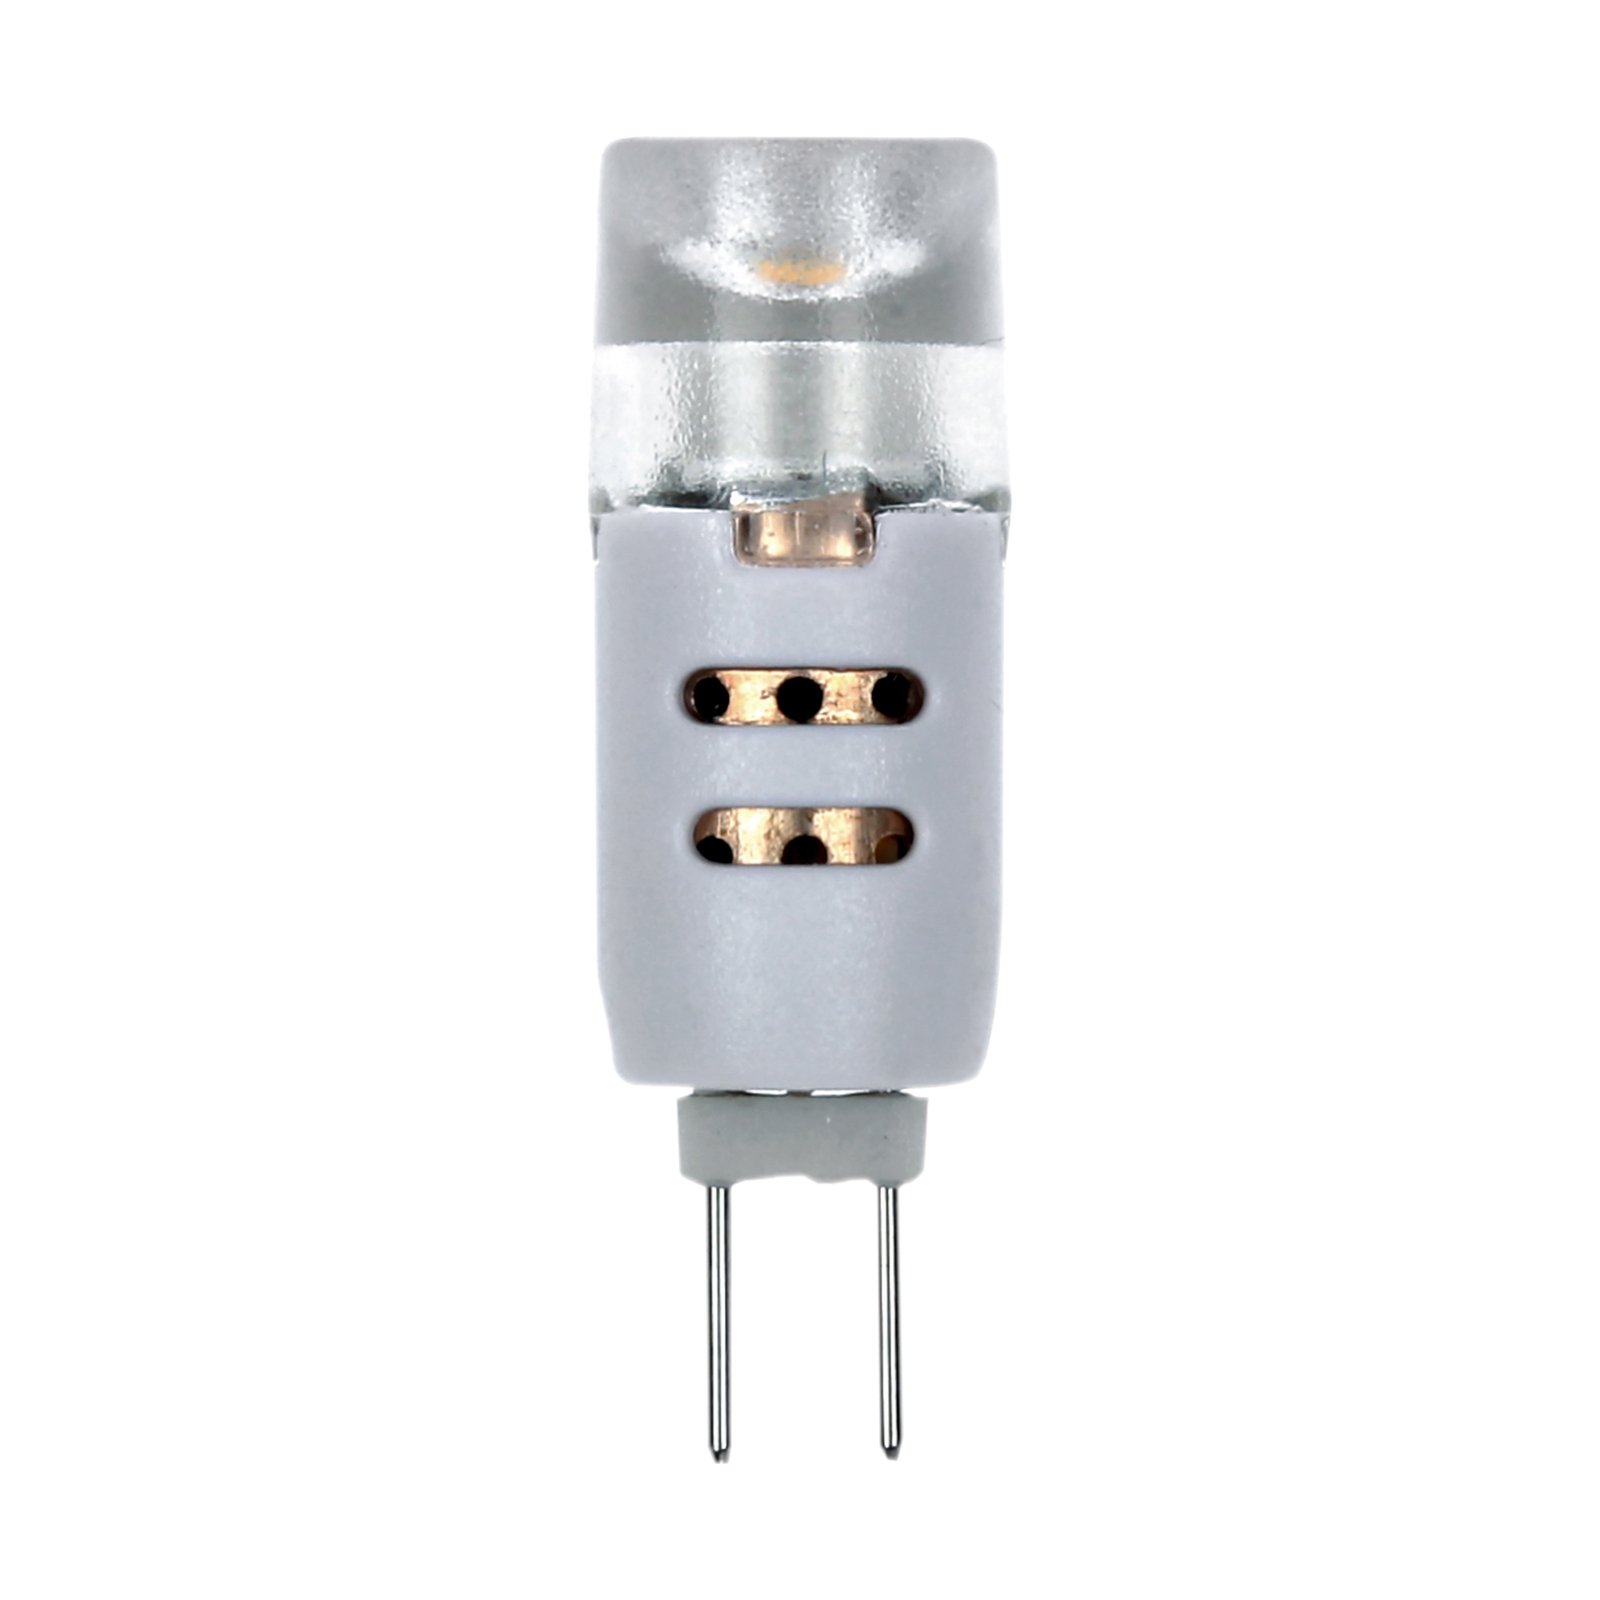 Müller Licht bi-pin LED bulb G4 1.2 W 2,700 K